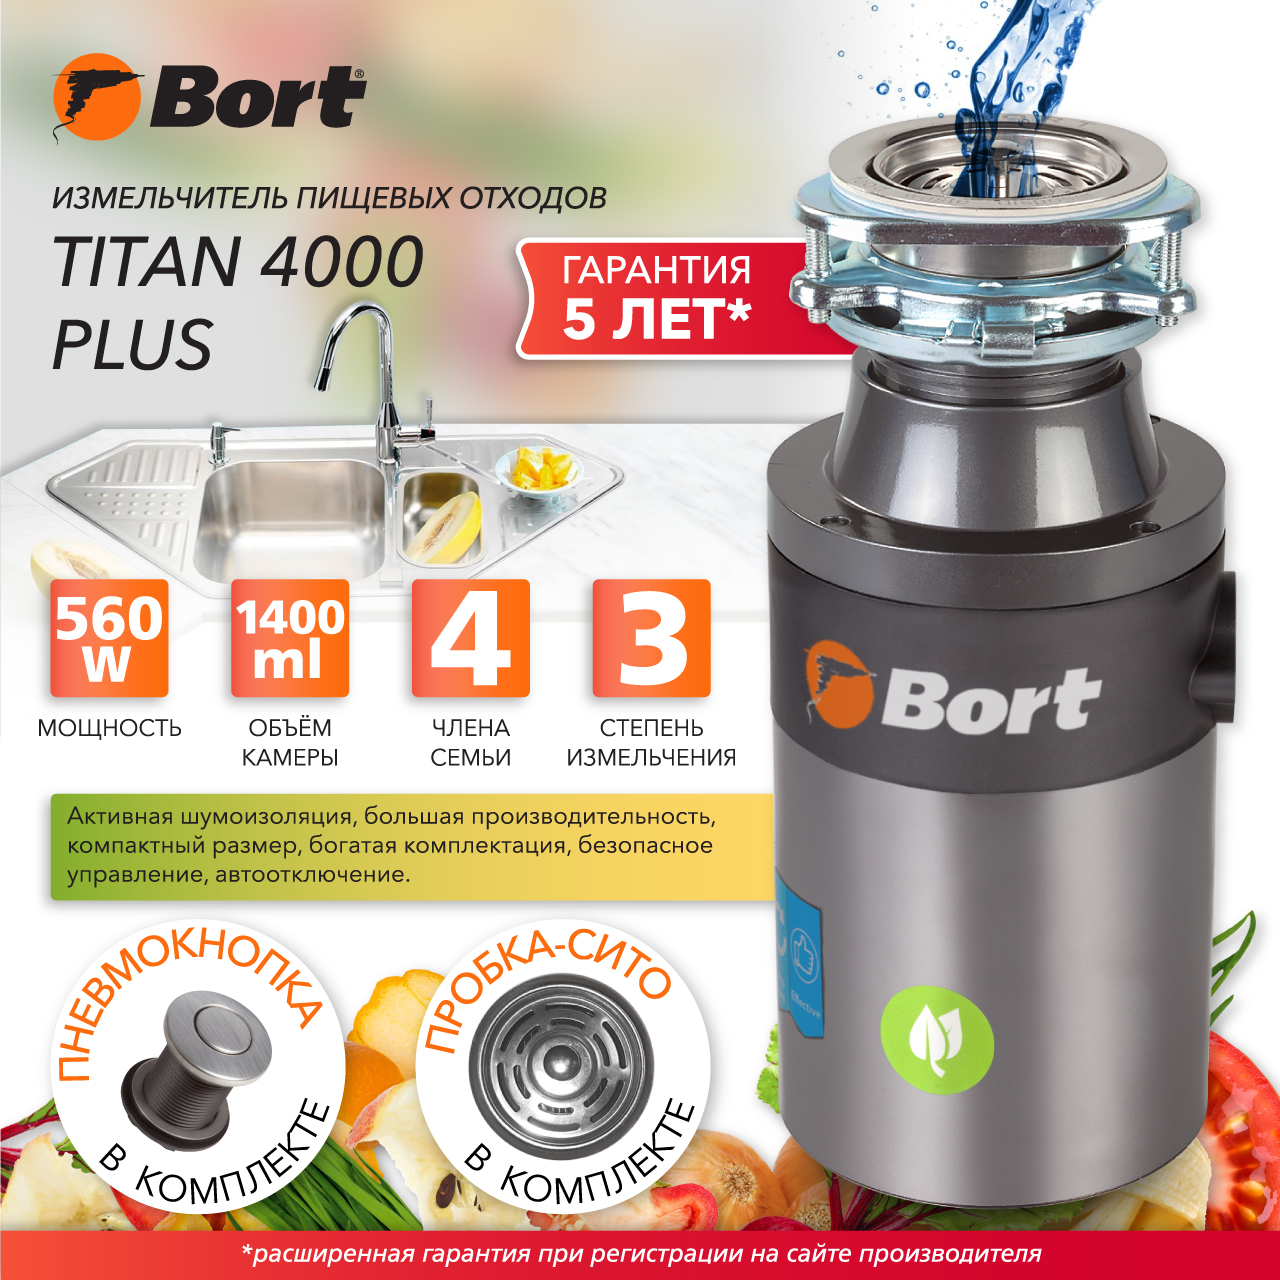 Измельчитель пищевых отходов Bort TITAN 4000 PLUS (91275776) серебристый